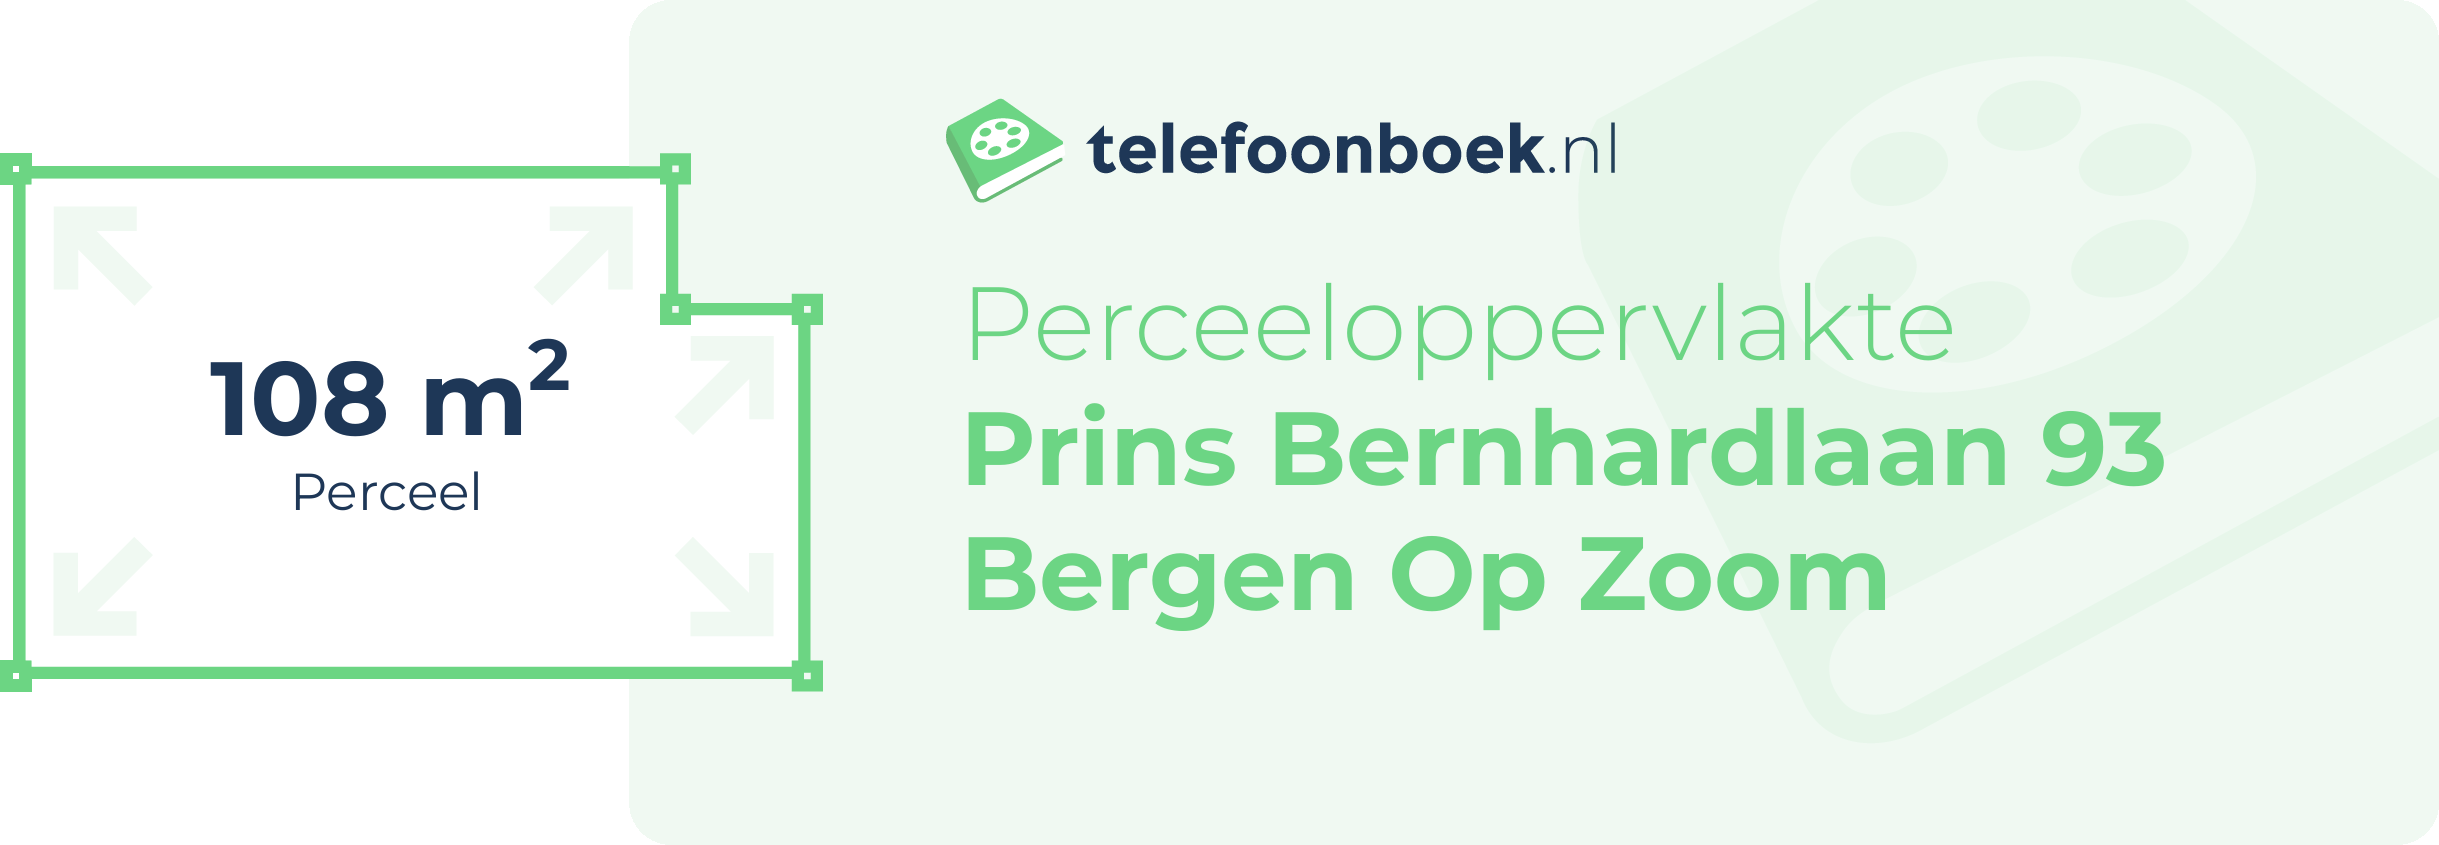 Perceeloppervlakte Prins Bernhardlaan 93 Bergen Op Zoom